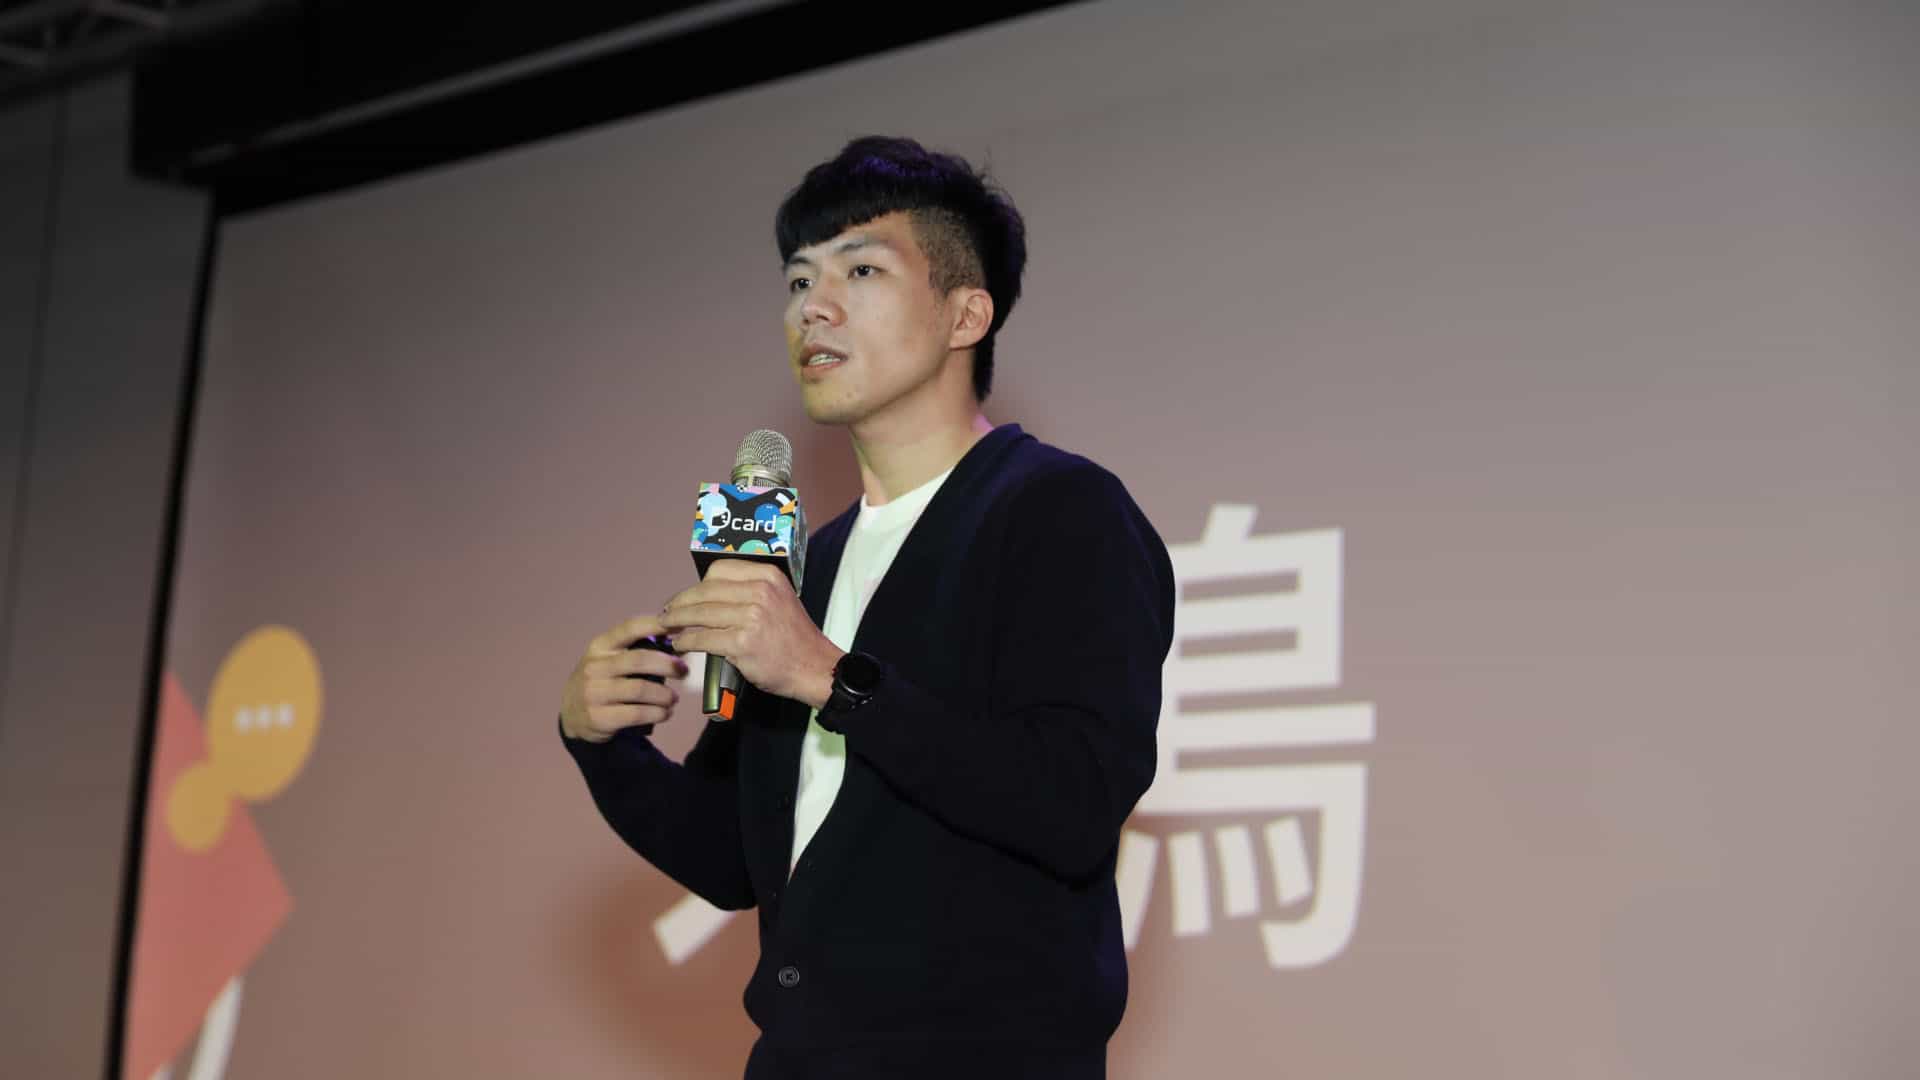 【新聞照片】dcard 產品總監林懷宇也分享創作者與板主達到的成就。